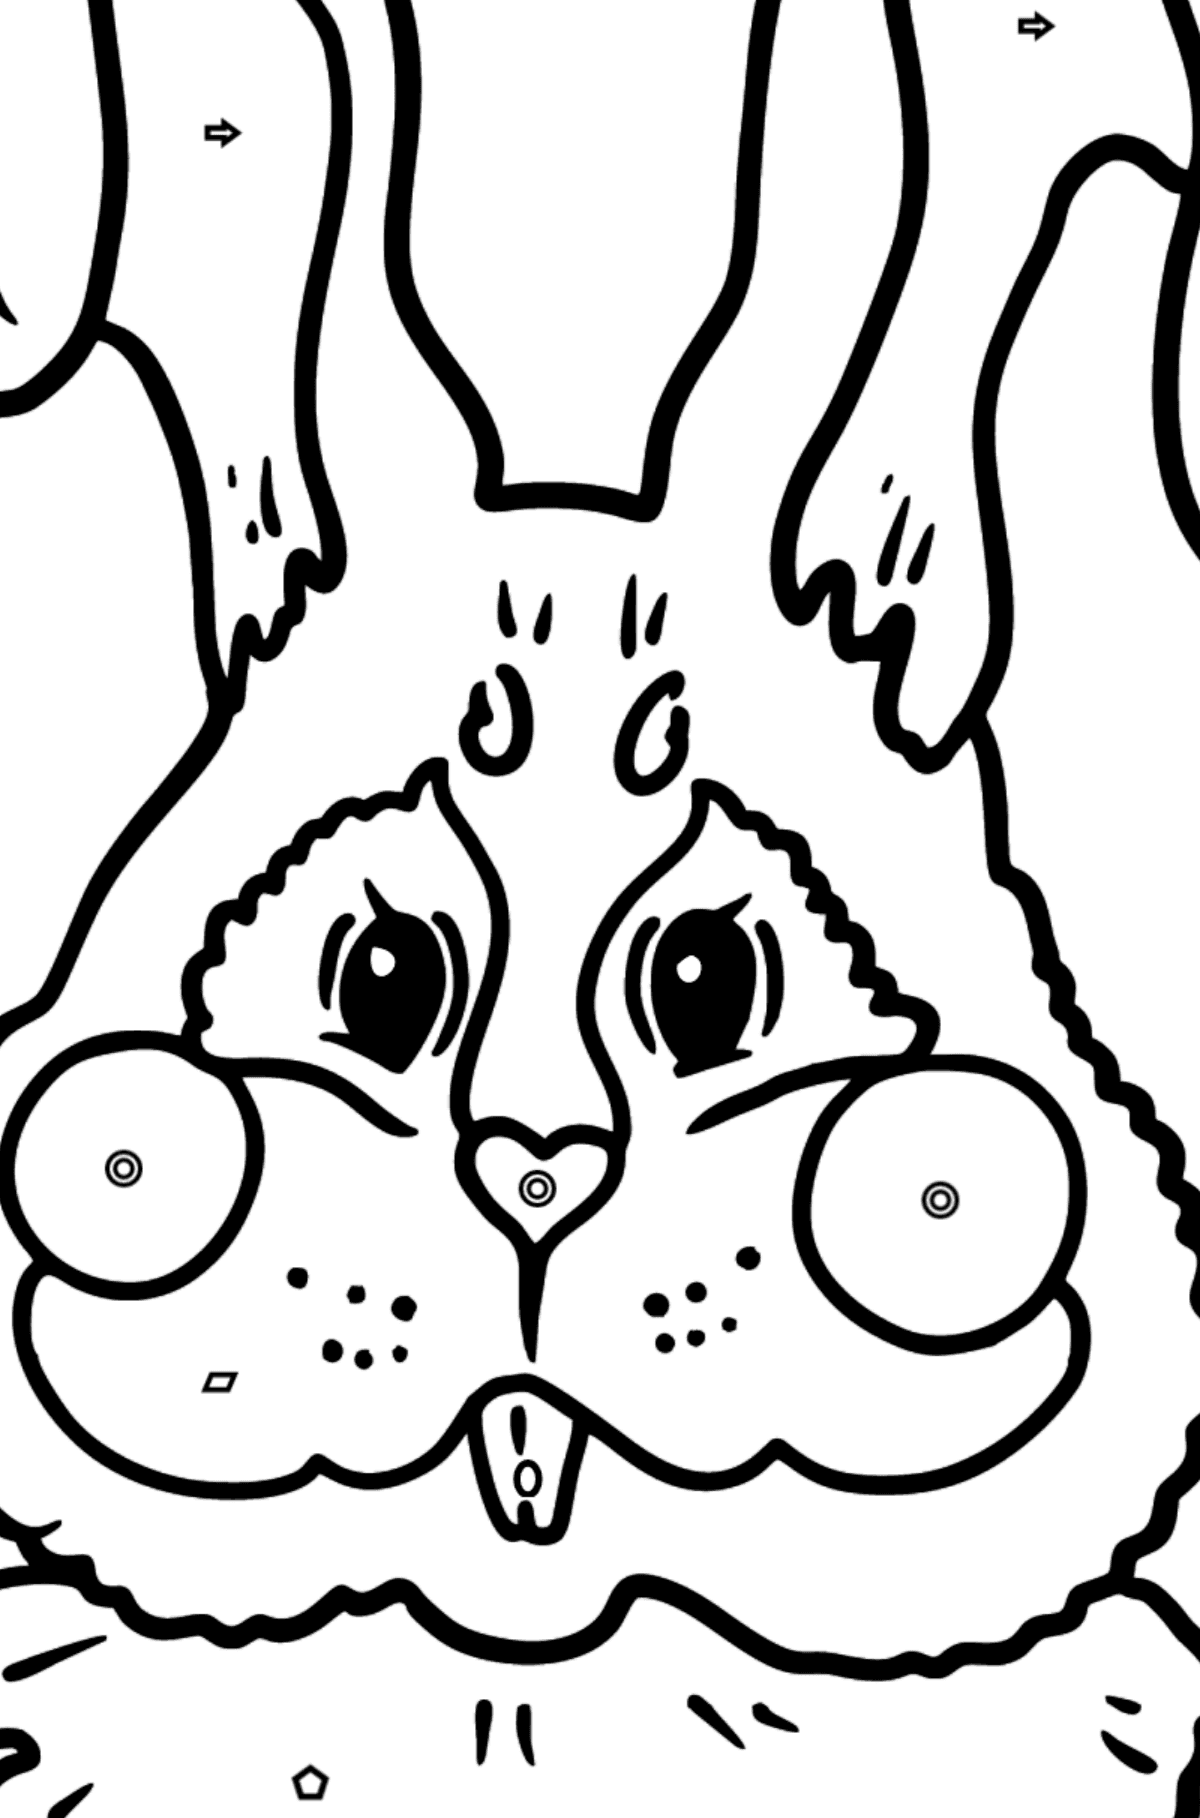 Tegning til fargelegging kanin snute - Fargelegge etter geometriske former for barn